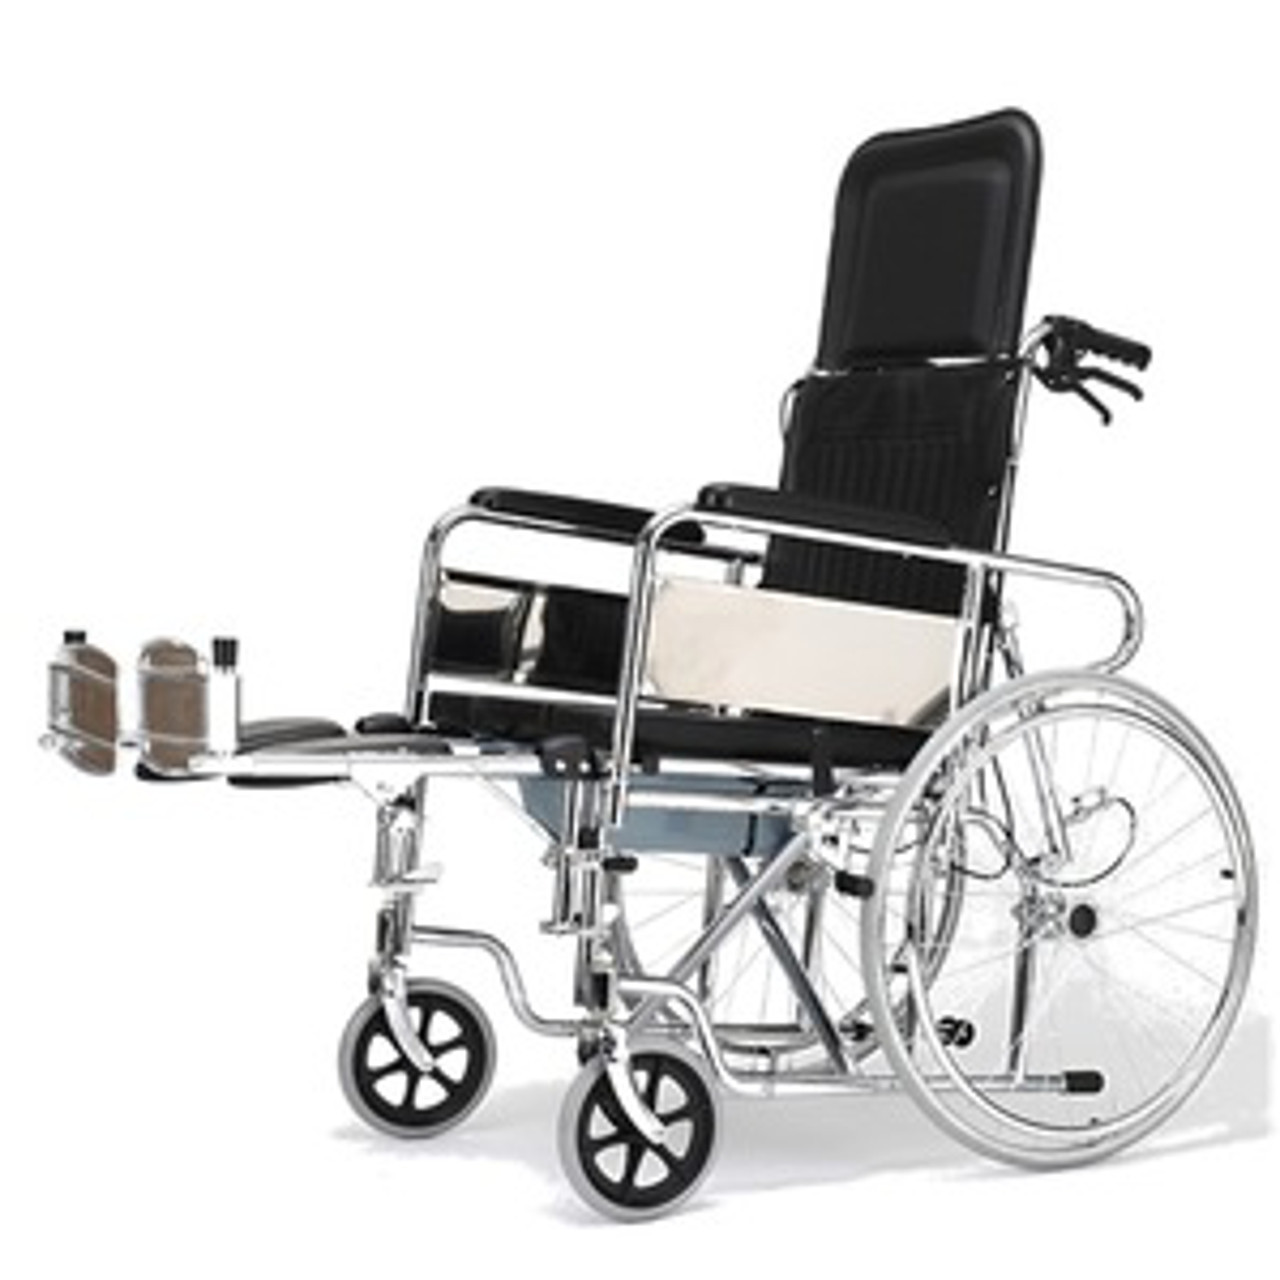 Инвалидная коляска с откидной спинкой